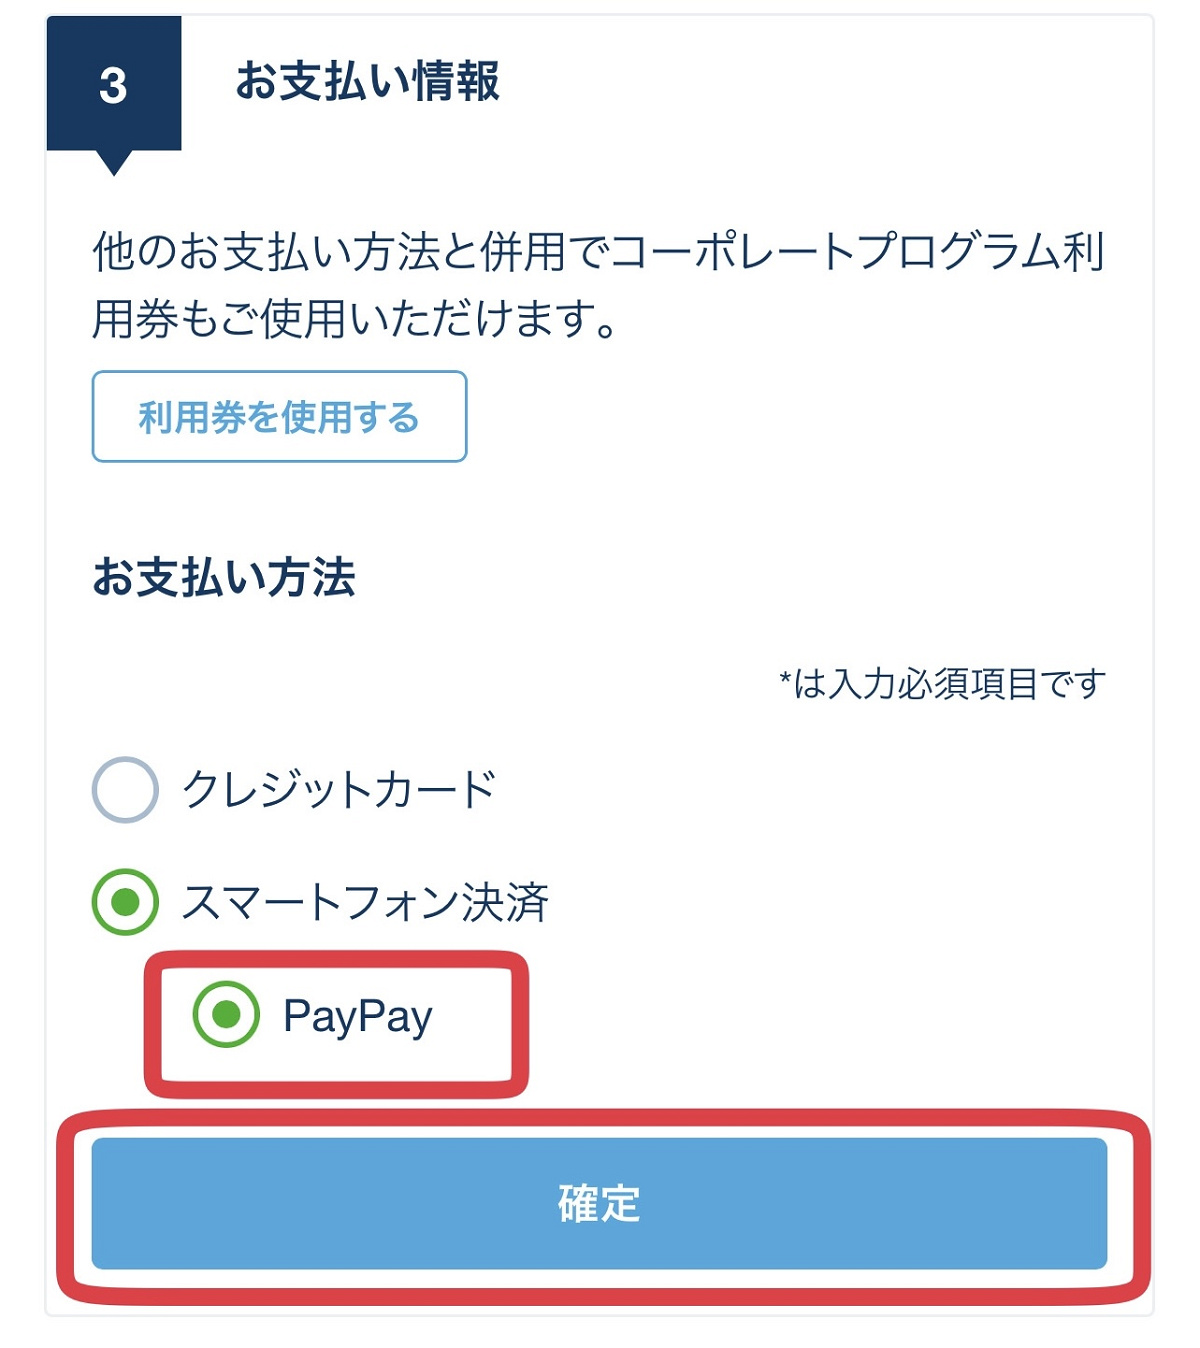 「PayPay」を選択し、「確定」をタップ